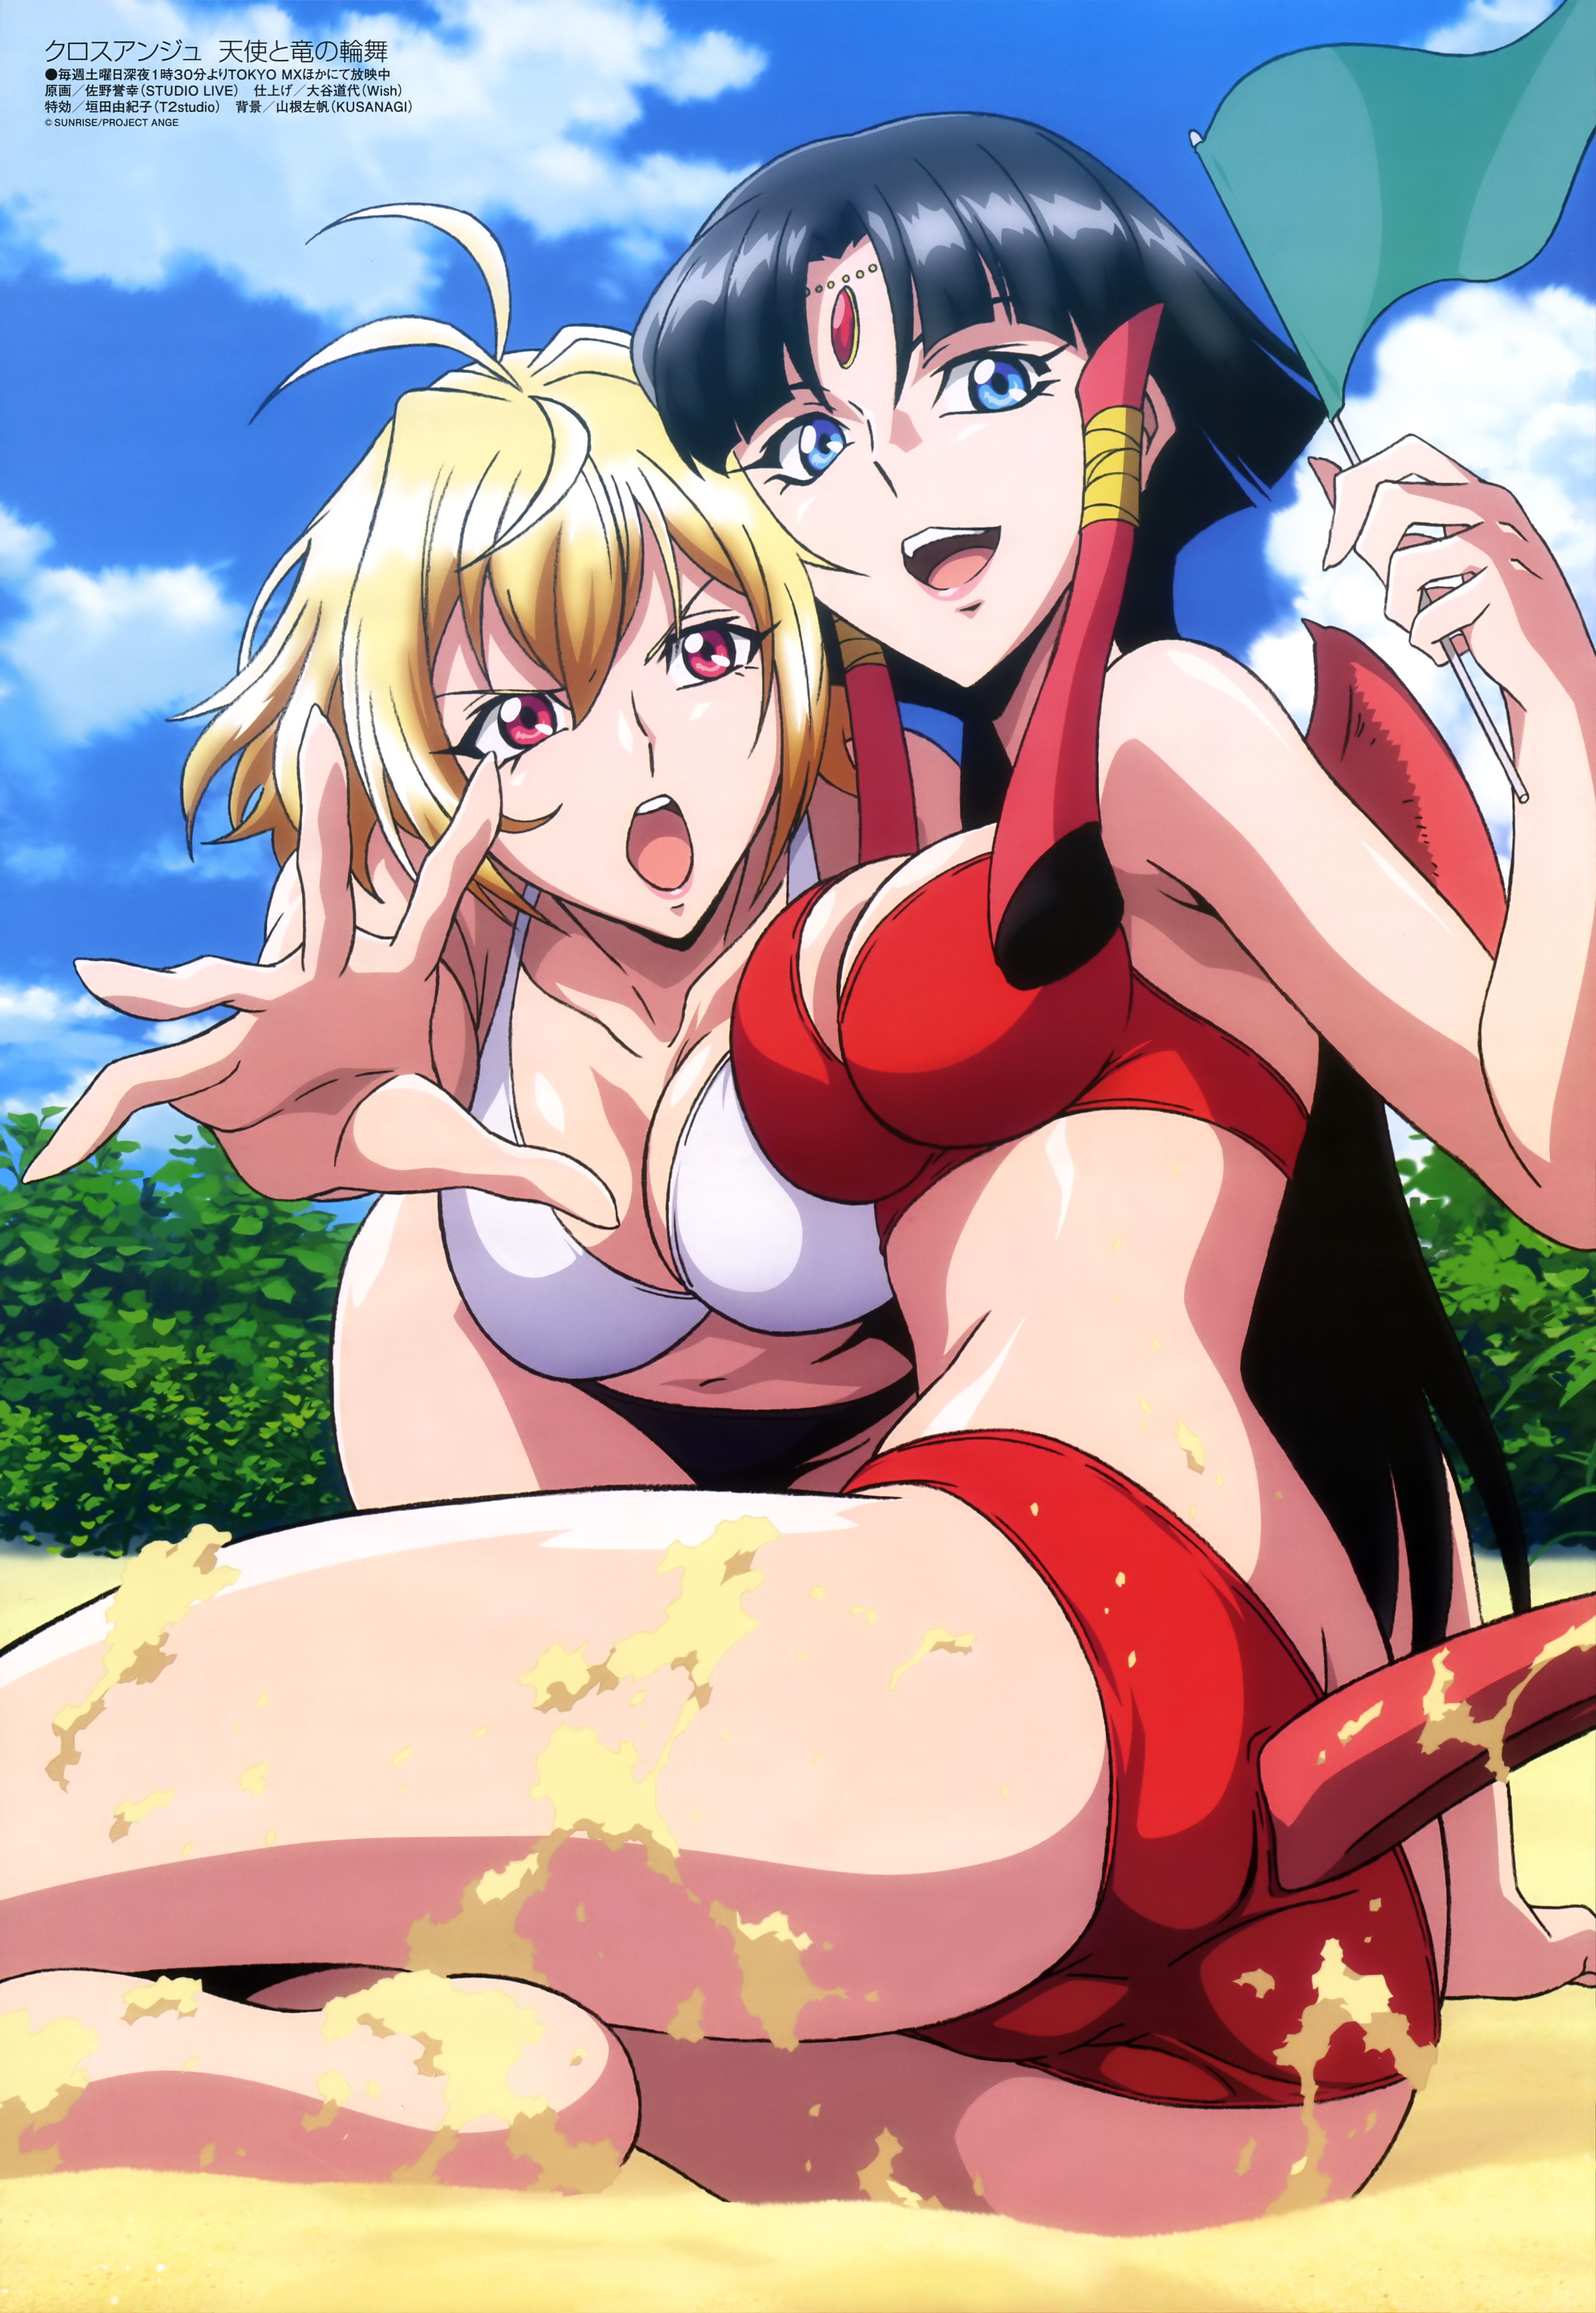 Megami MAGAZINE April 2015 anime posters Haruhichan.com Cross Ange